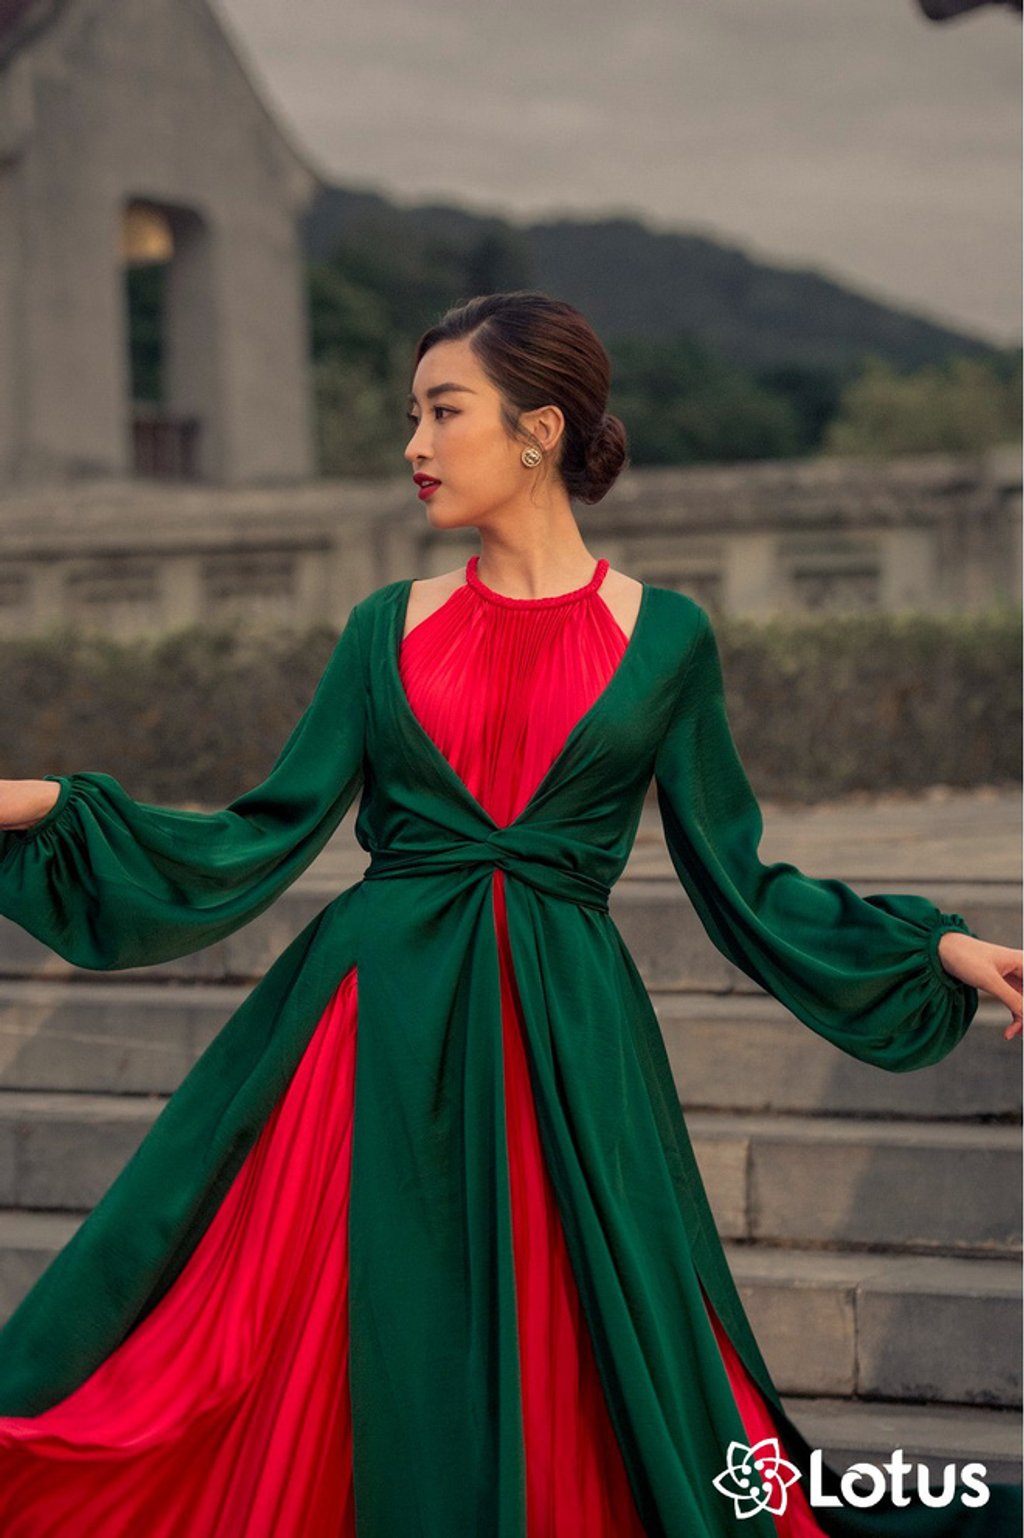 Đỗ Mỹ Linh đằm thắm đúng chuẩn vẻ đẹp của phụ nữ Việt xưa. Thiết kế 